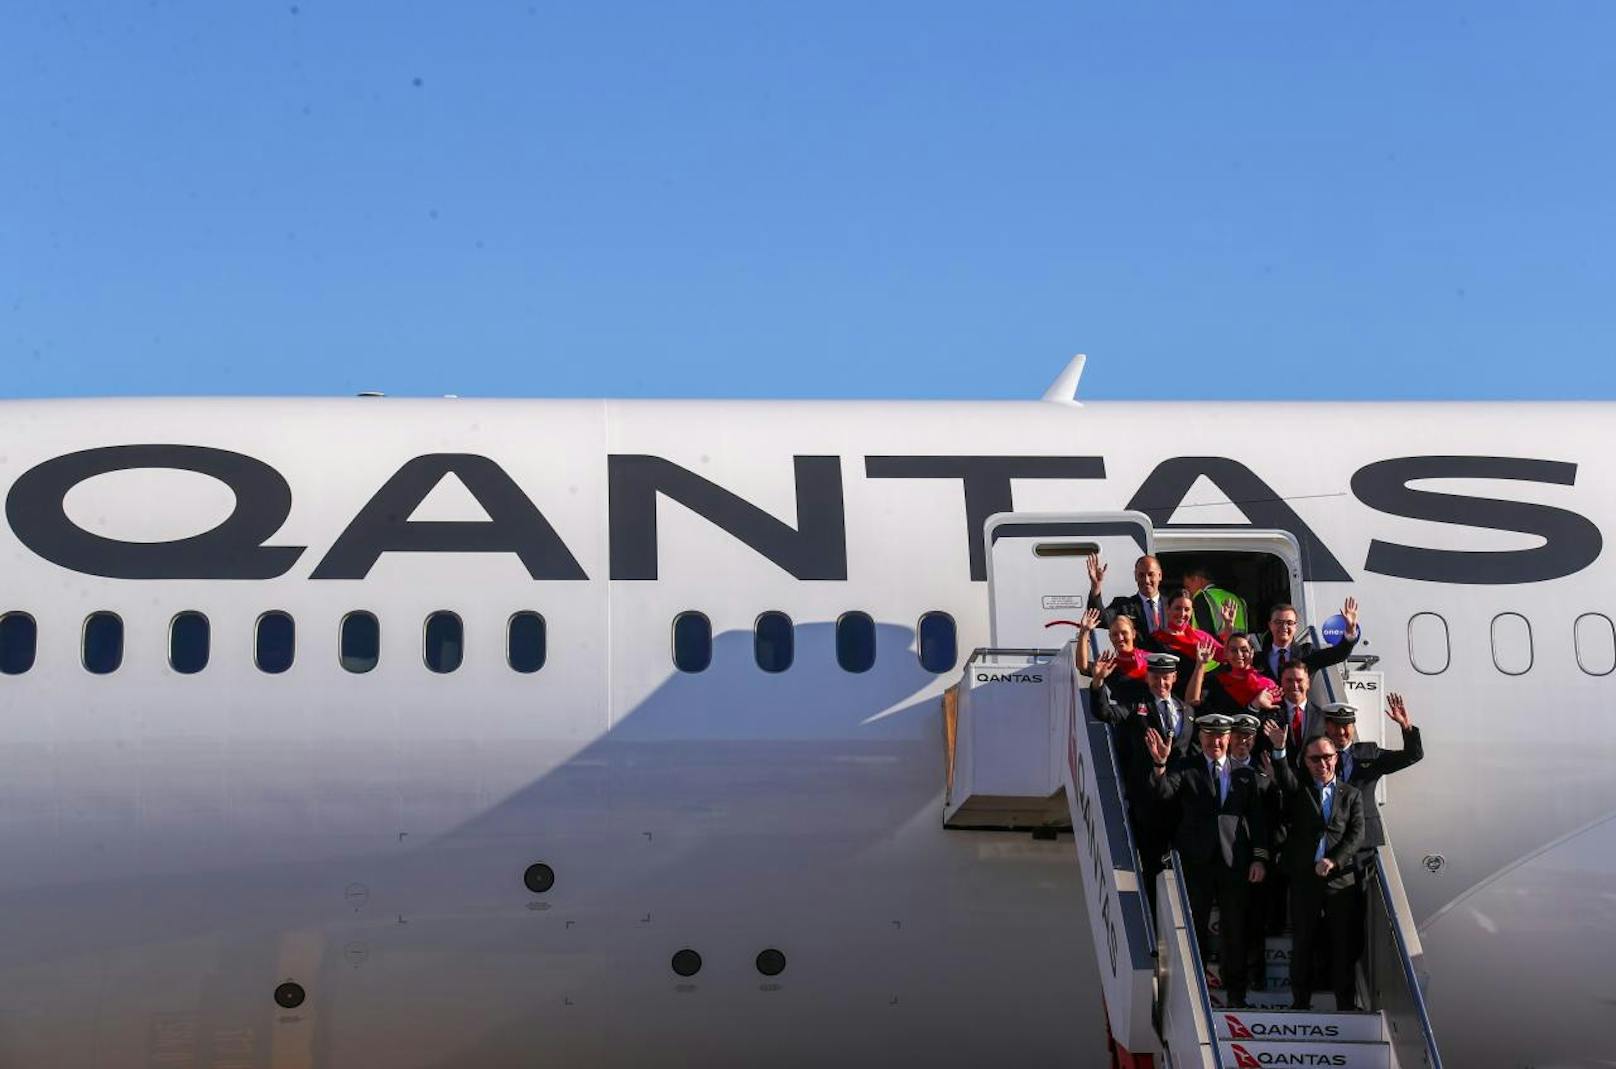 16.200 Kilometer und fast 20 Stunden lang war die Reise, die 49 Passagiere und Besatzungsmitglieder von Qantas unlängst angetreten haben